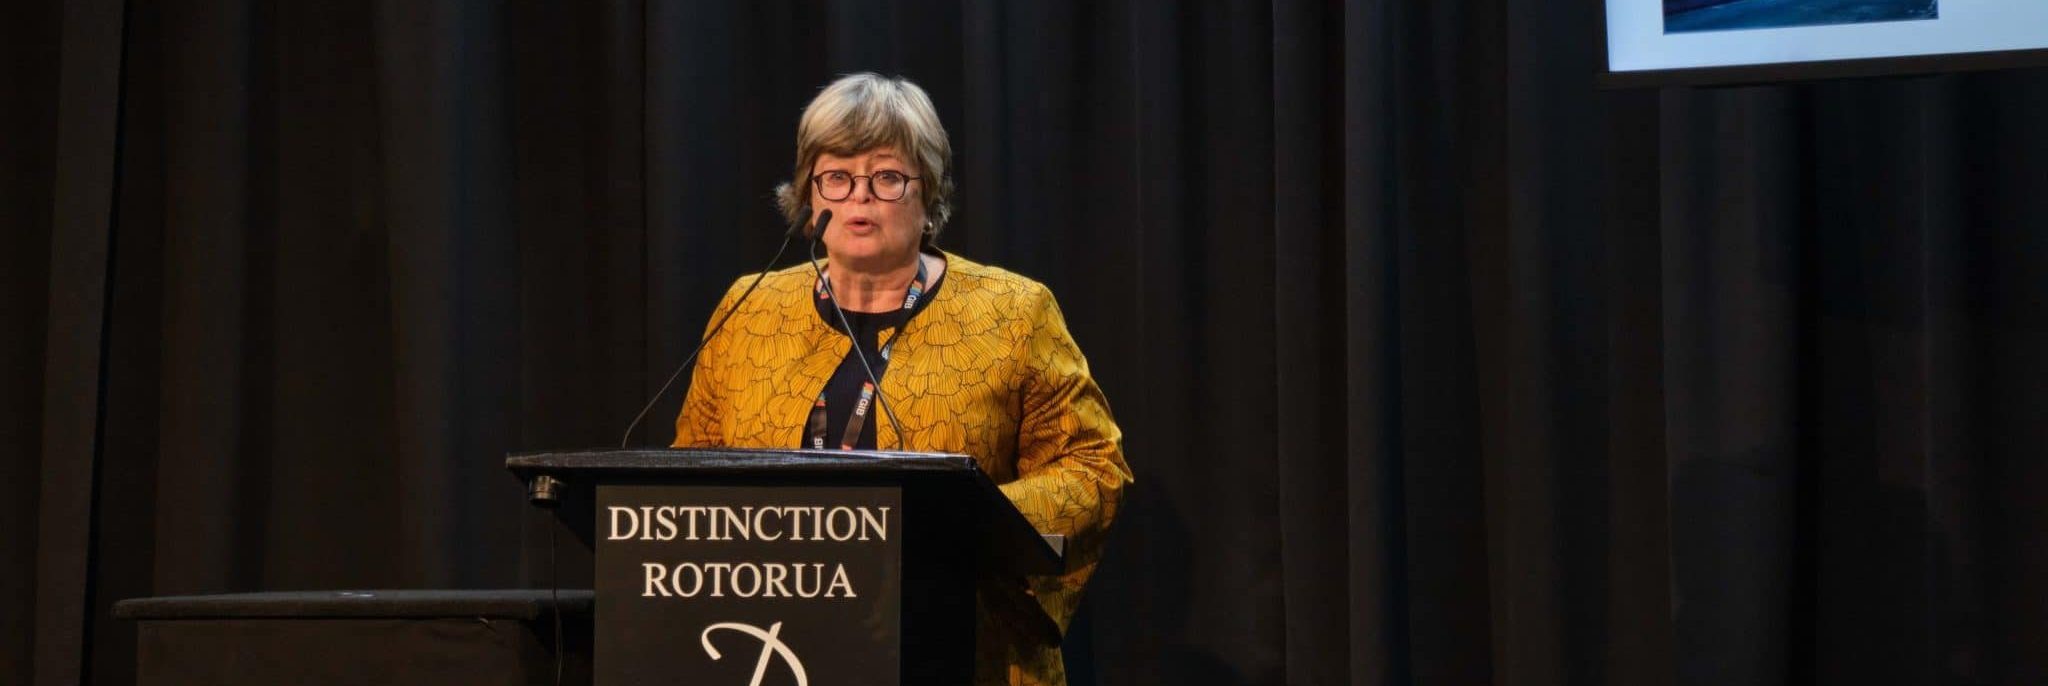 Linda Lodetti Speaking at NZIQS (1)